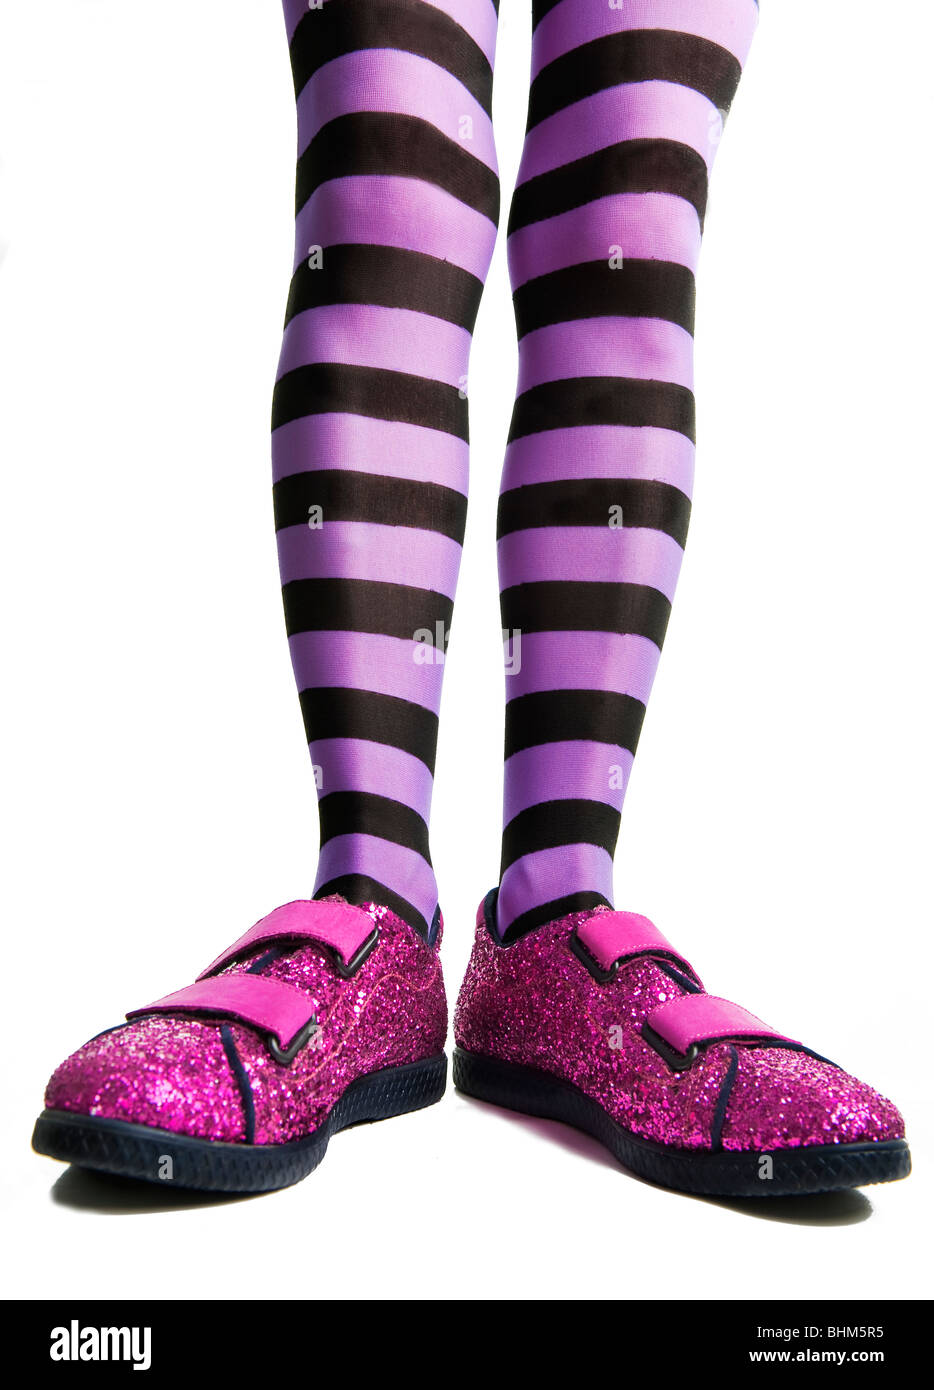 Pink sparkle zapatos con la mujer de piernas en leotardos de rayas púrpura o pantyhose Fotografía de - Alamy